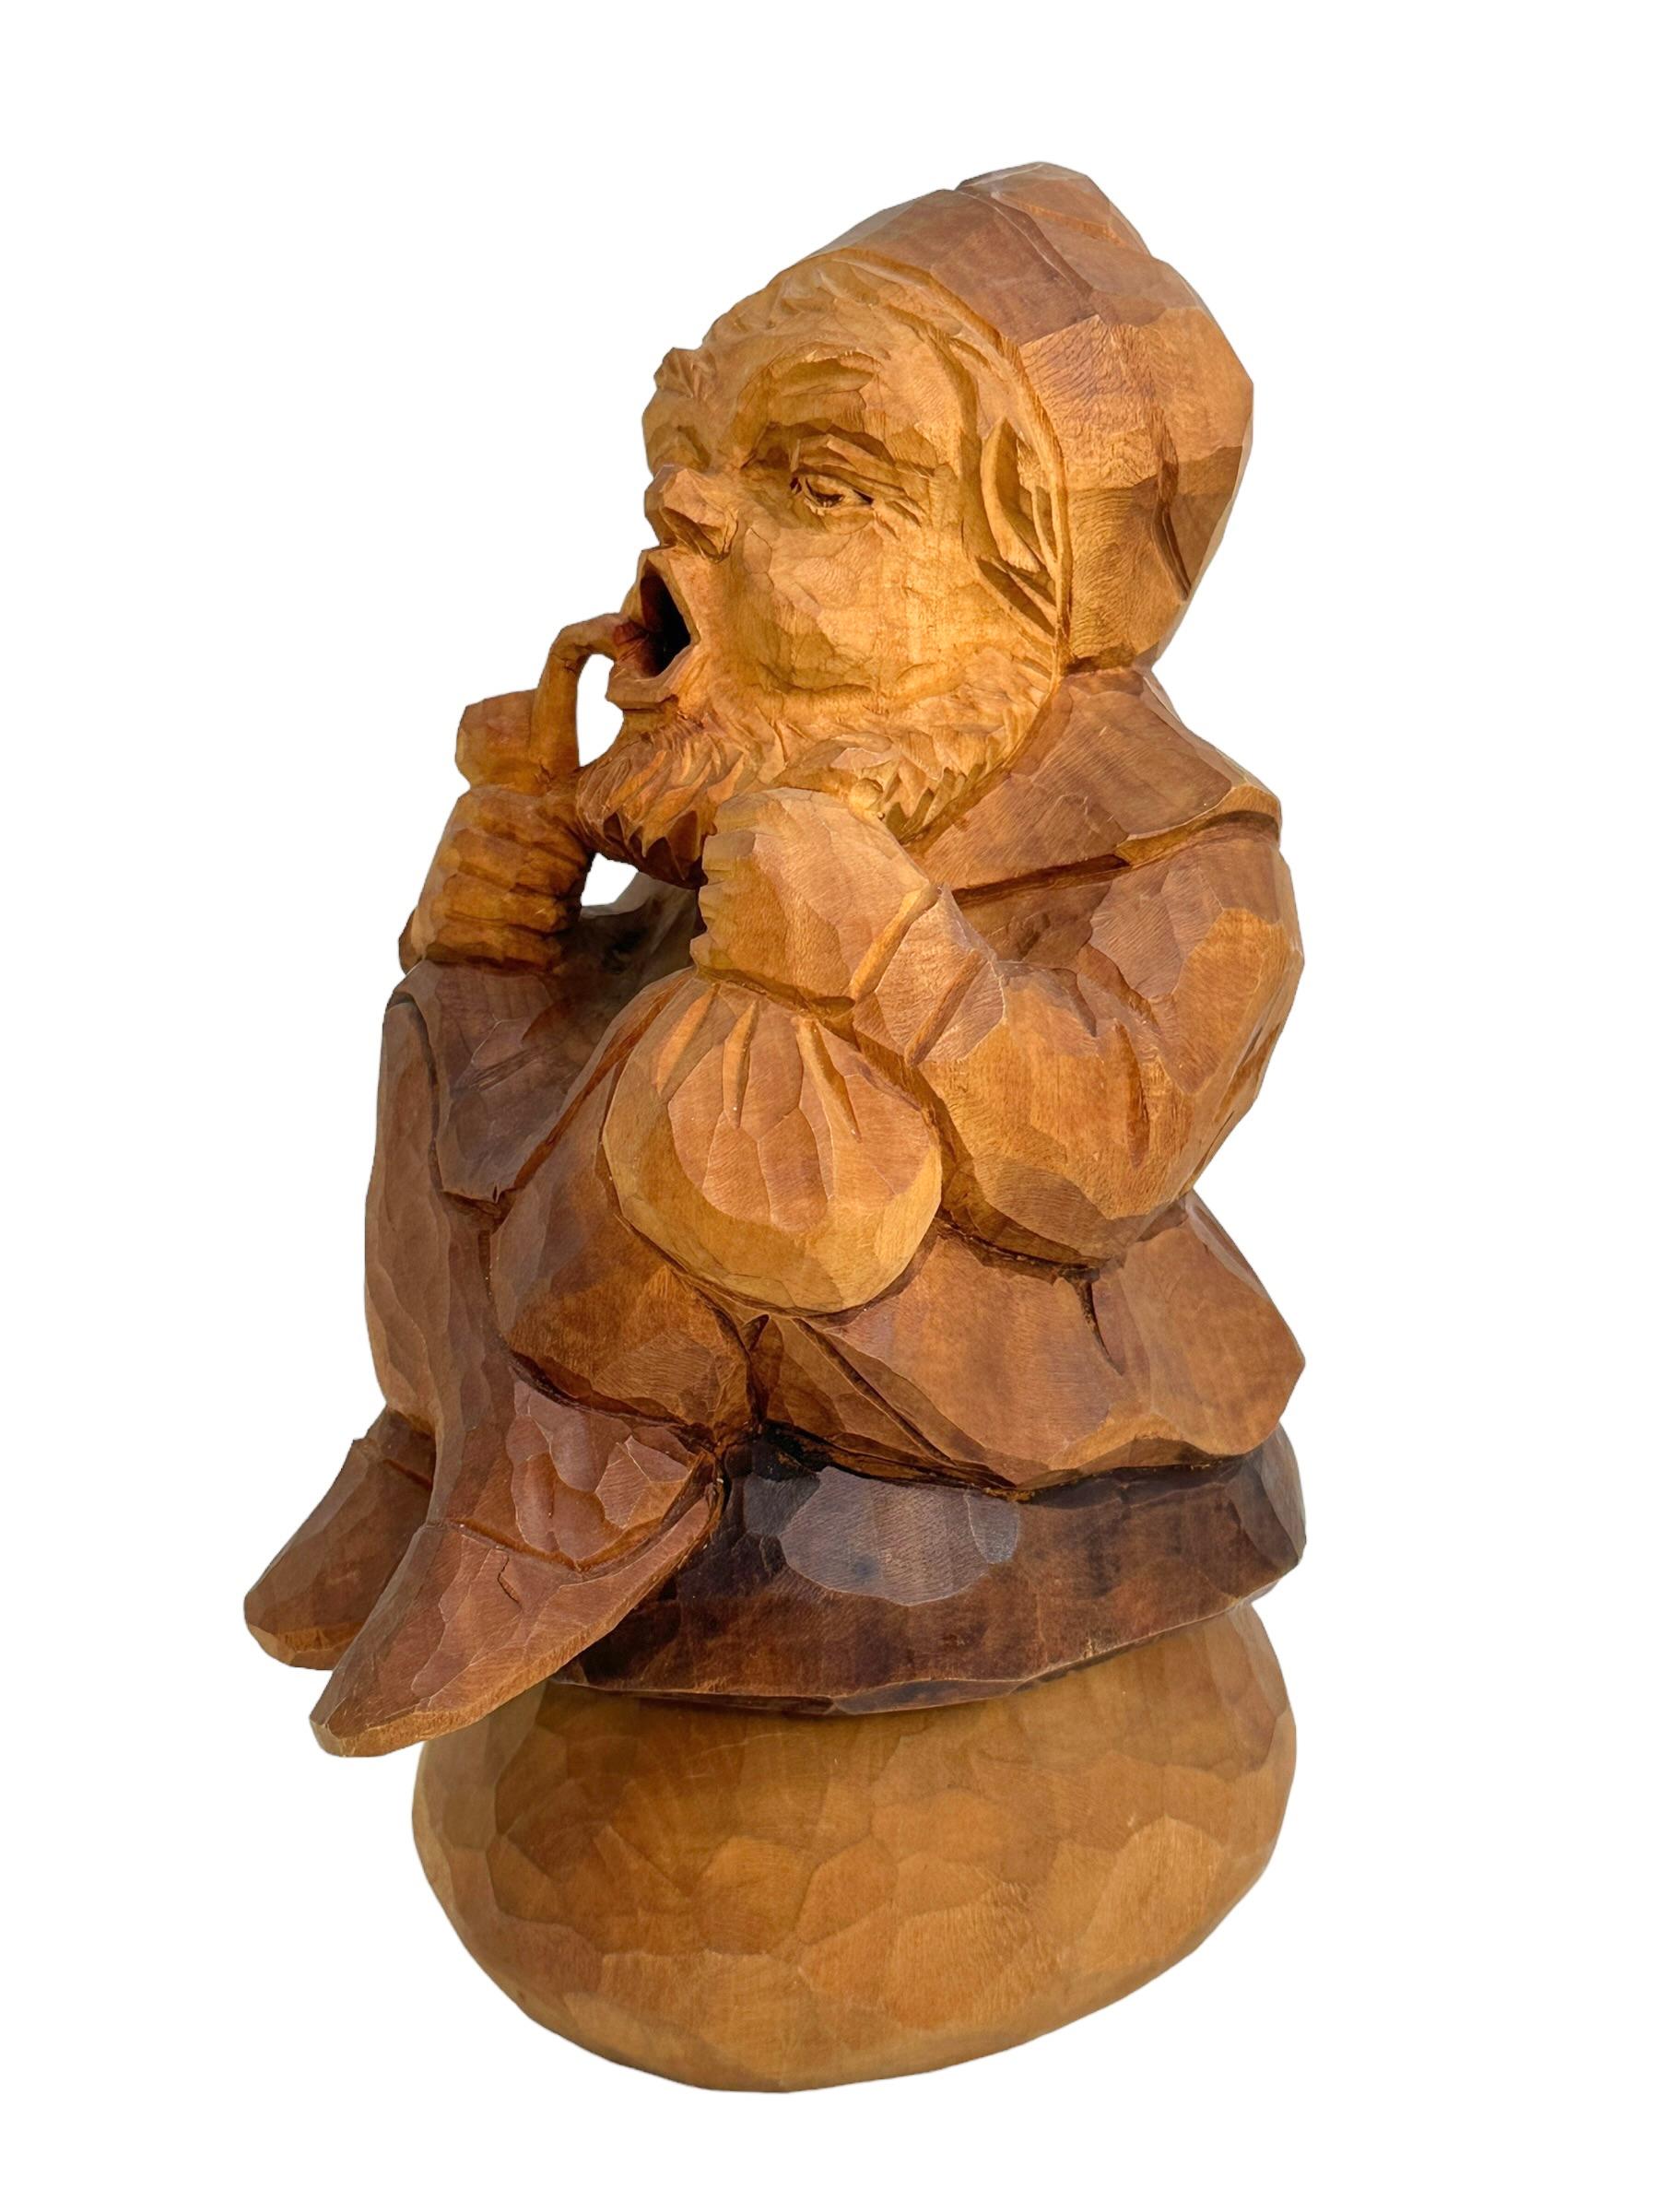 Hand Carved Wooden Smoker Gnome Figure, Vintage German Black Forest Folk Art  For Sale 1